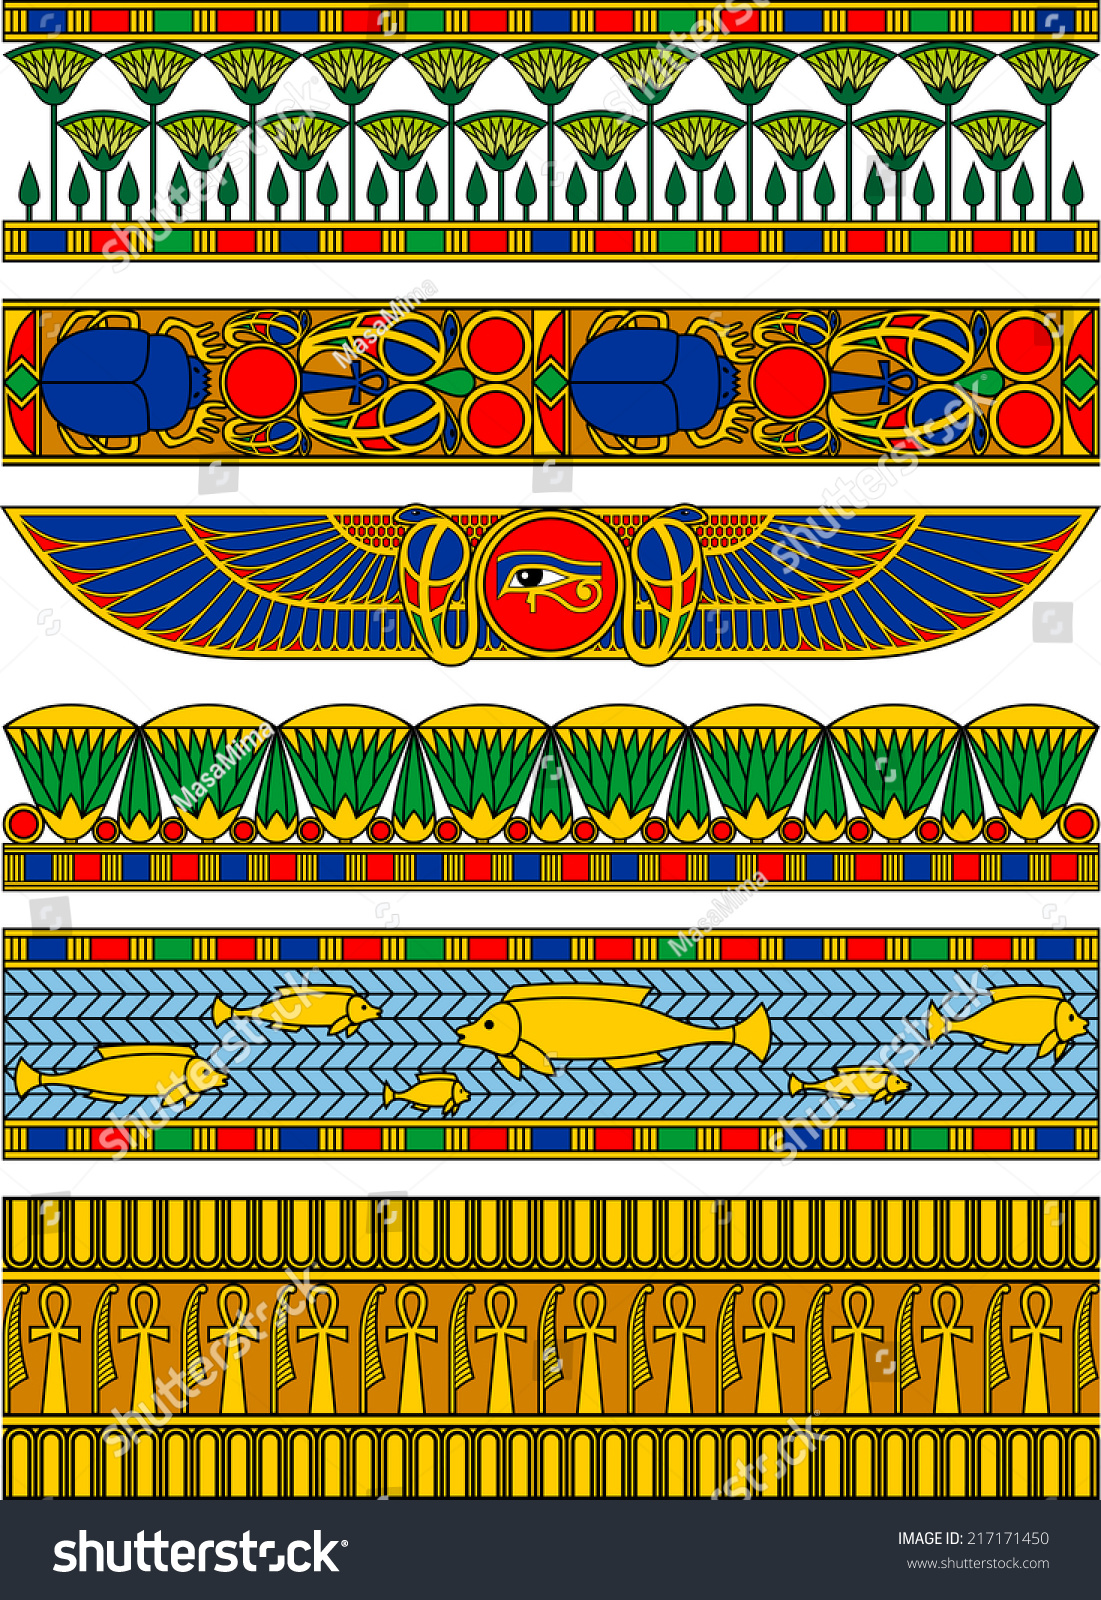 Ленточный зооморфный орнамент древнего Египта